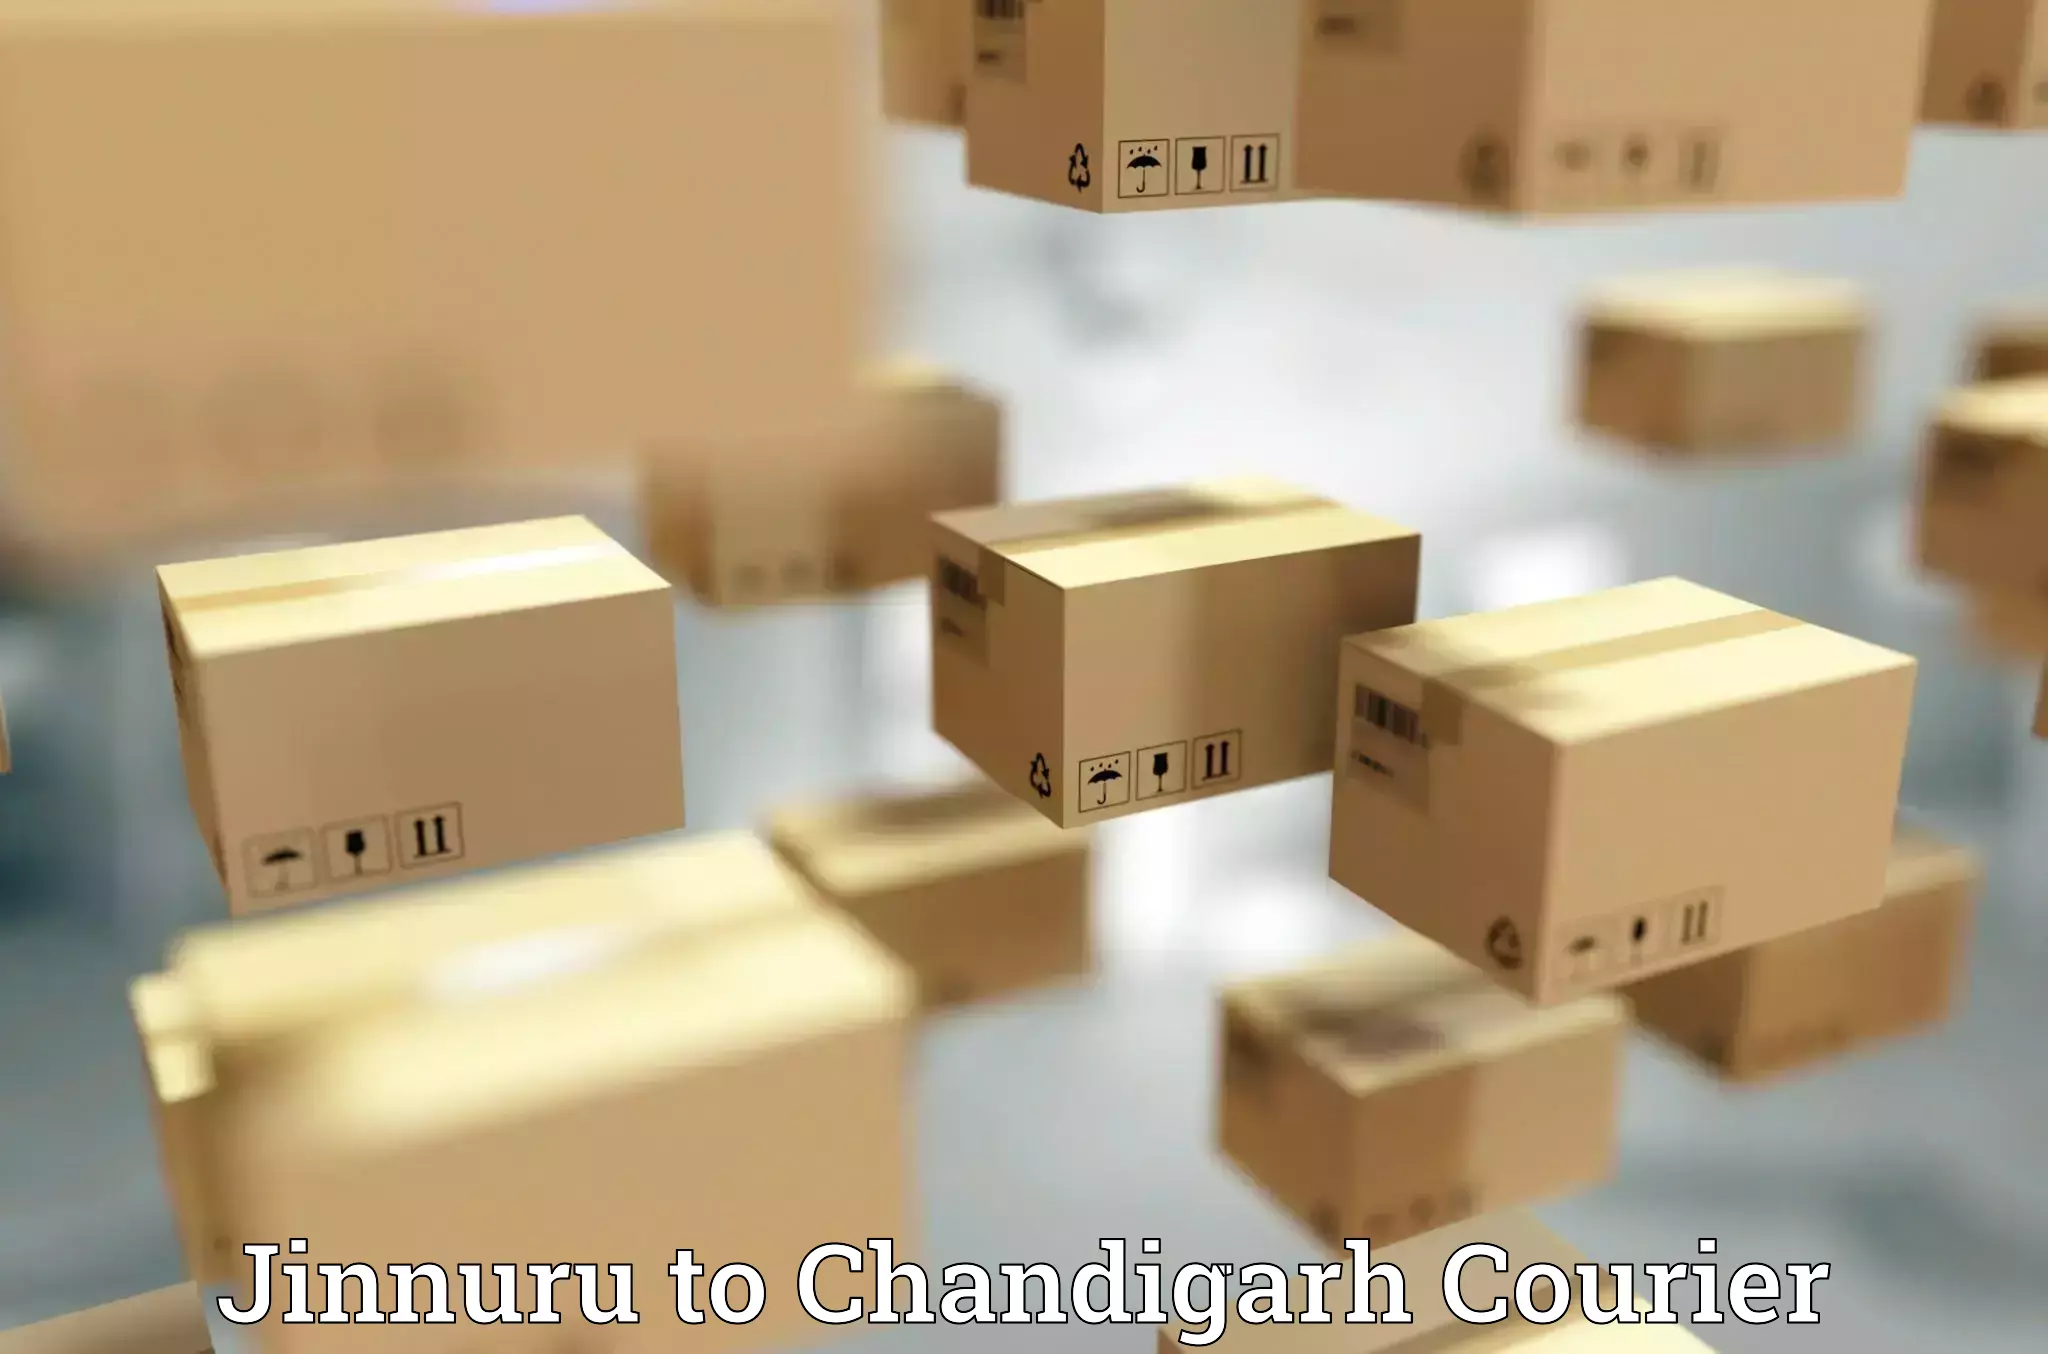 Digital courier platforms Jinnuru to Chandigarh